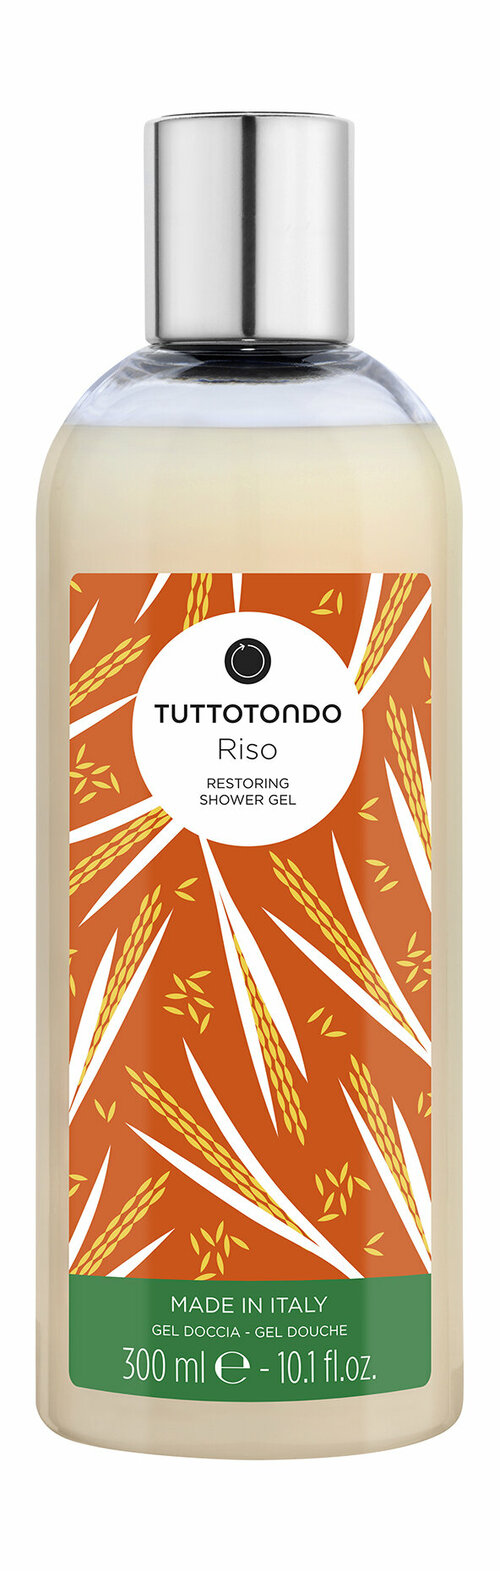 Восстанавливающий гель для душа Tuttotondo Riso Restoring Shower Gel